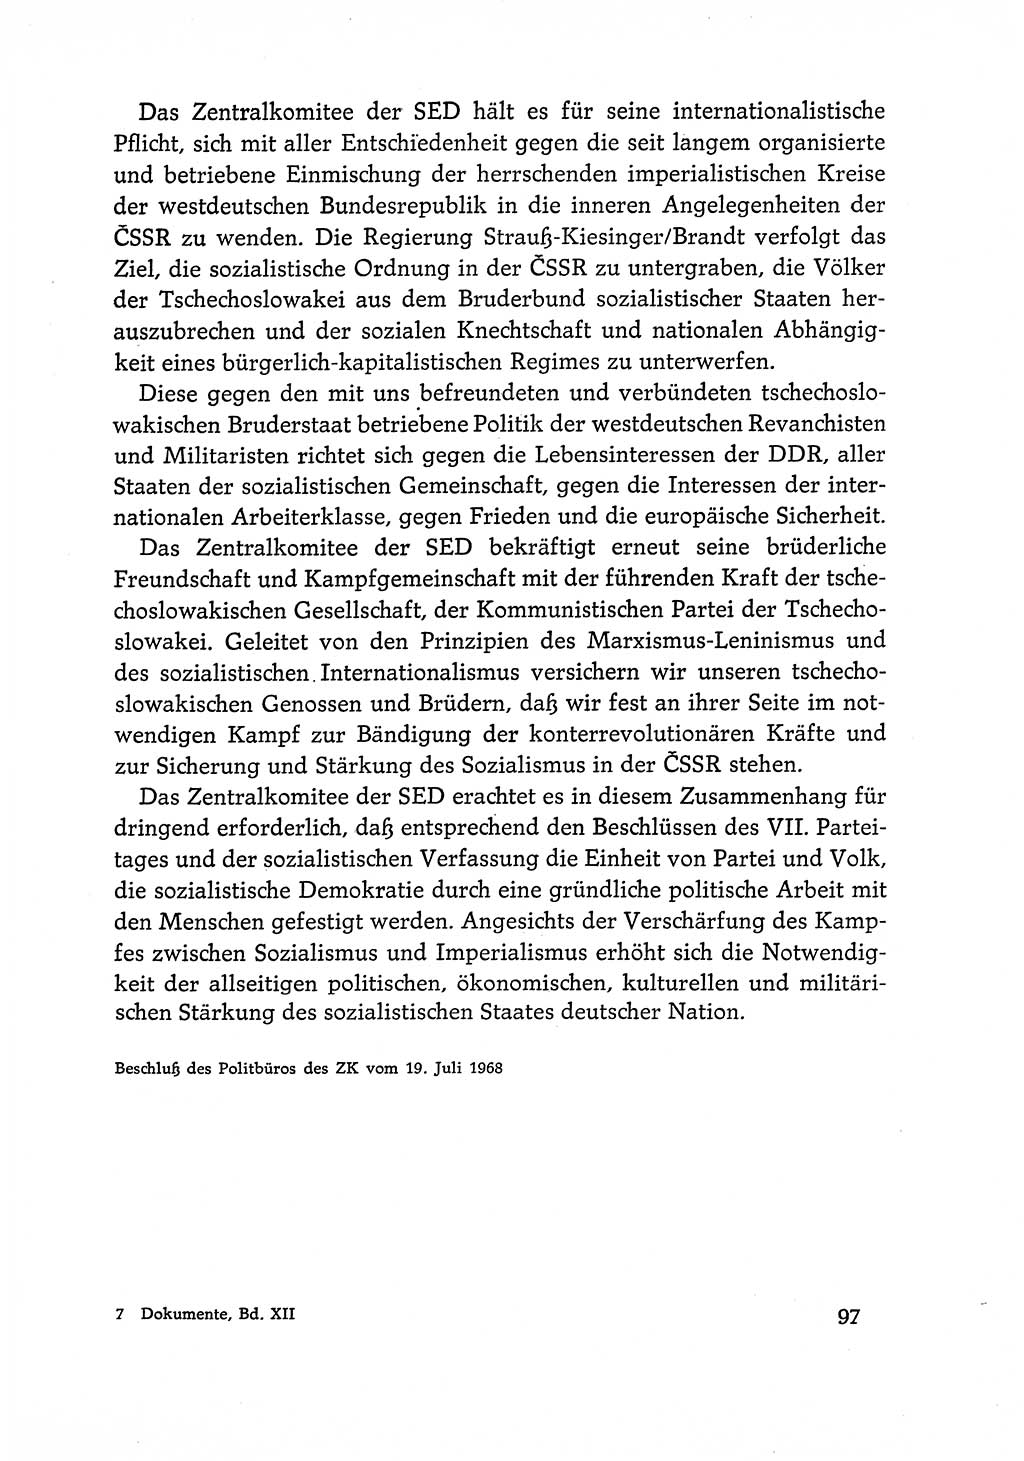 Dokumente der Sozialistischen Einheitspartei Deutschlands (SED) [Deutsche Demokratische Republik (DDR)] 1968-1969, Seite 97 (Dok. SED DDR 1968-1969, S. 97)